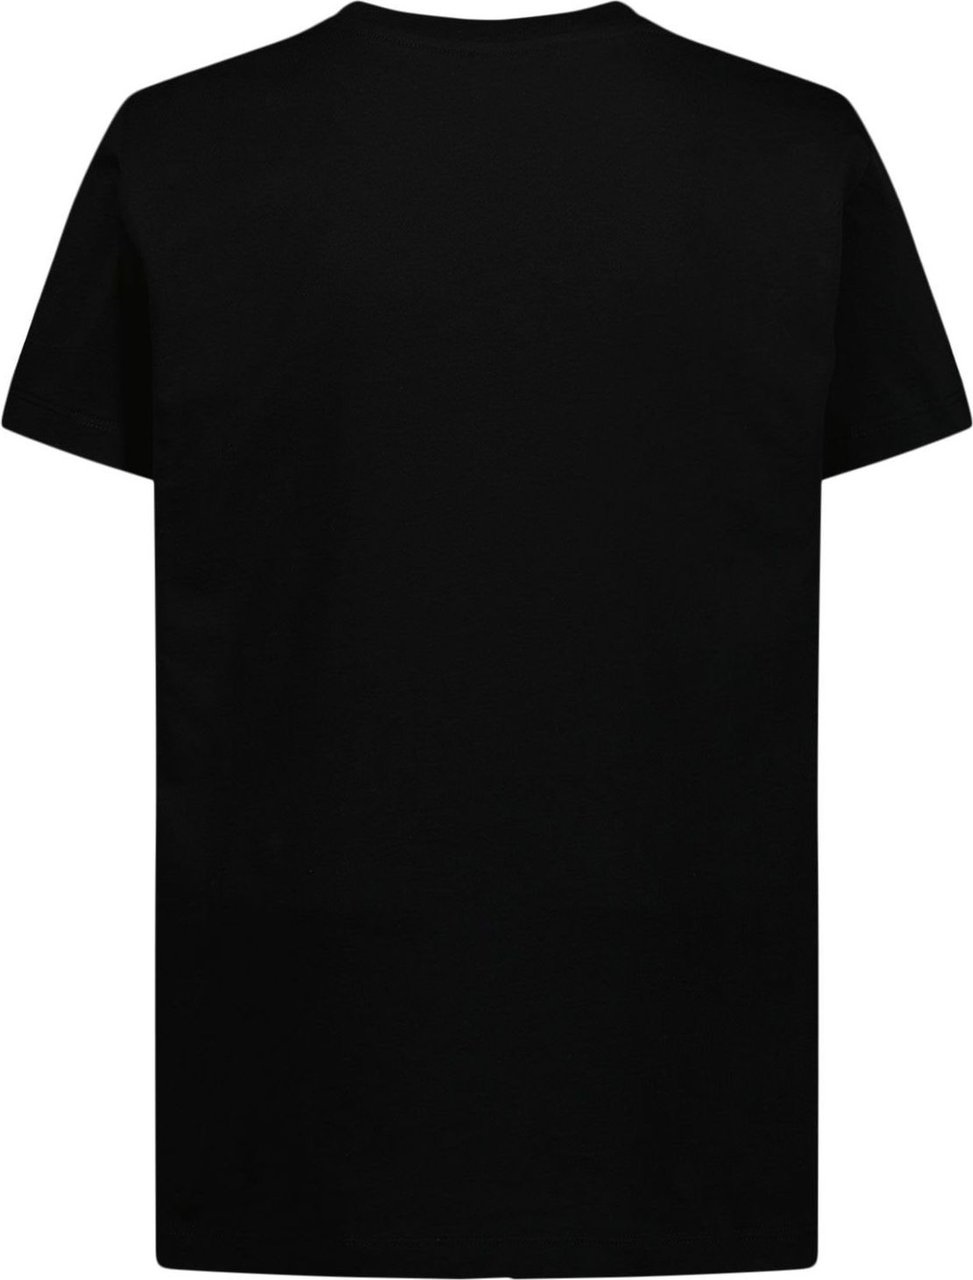 Balmain Balmain 6R8O61 kinder t-shirt zwart Zwart